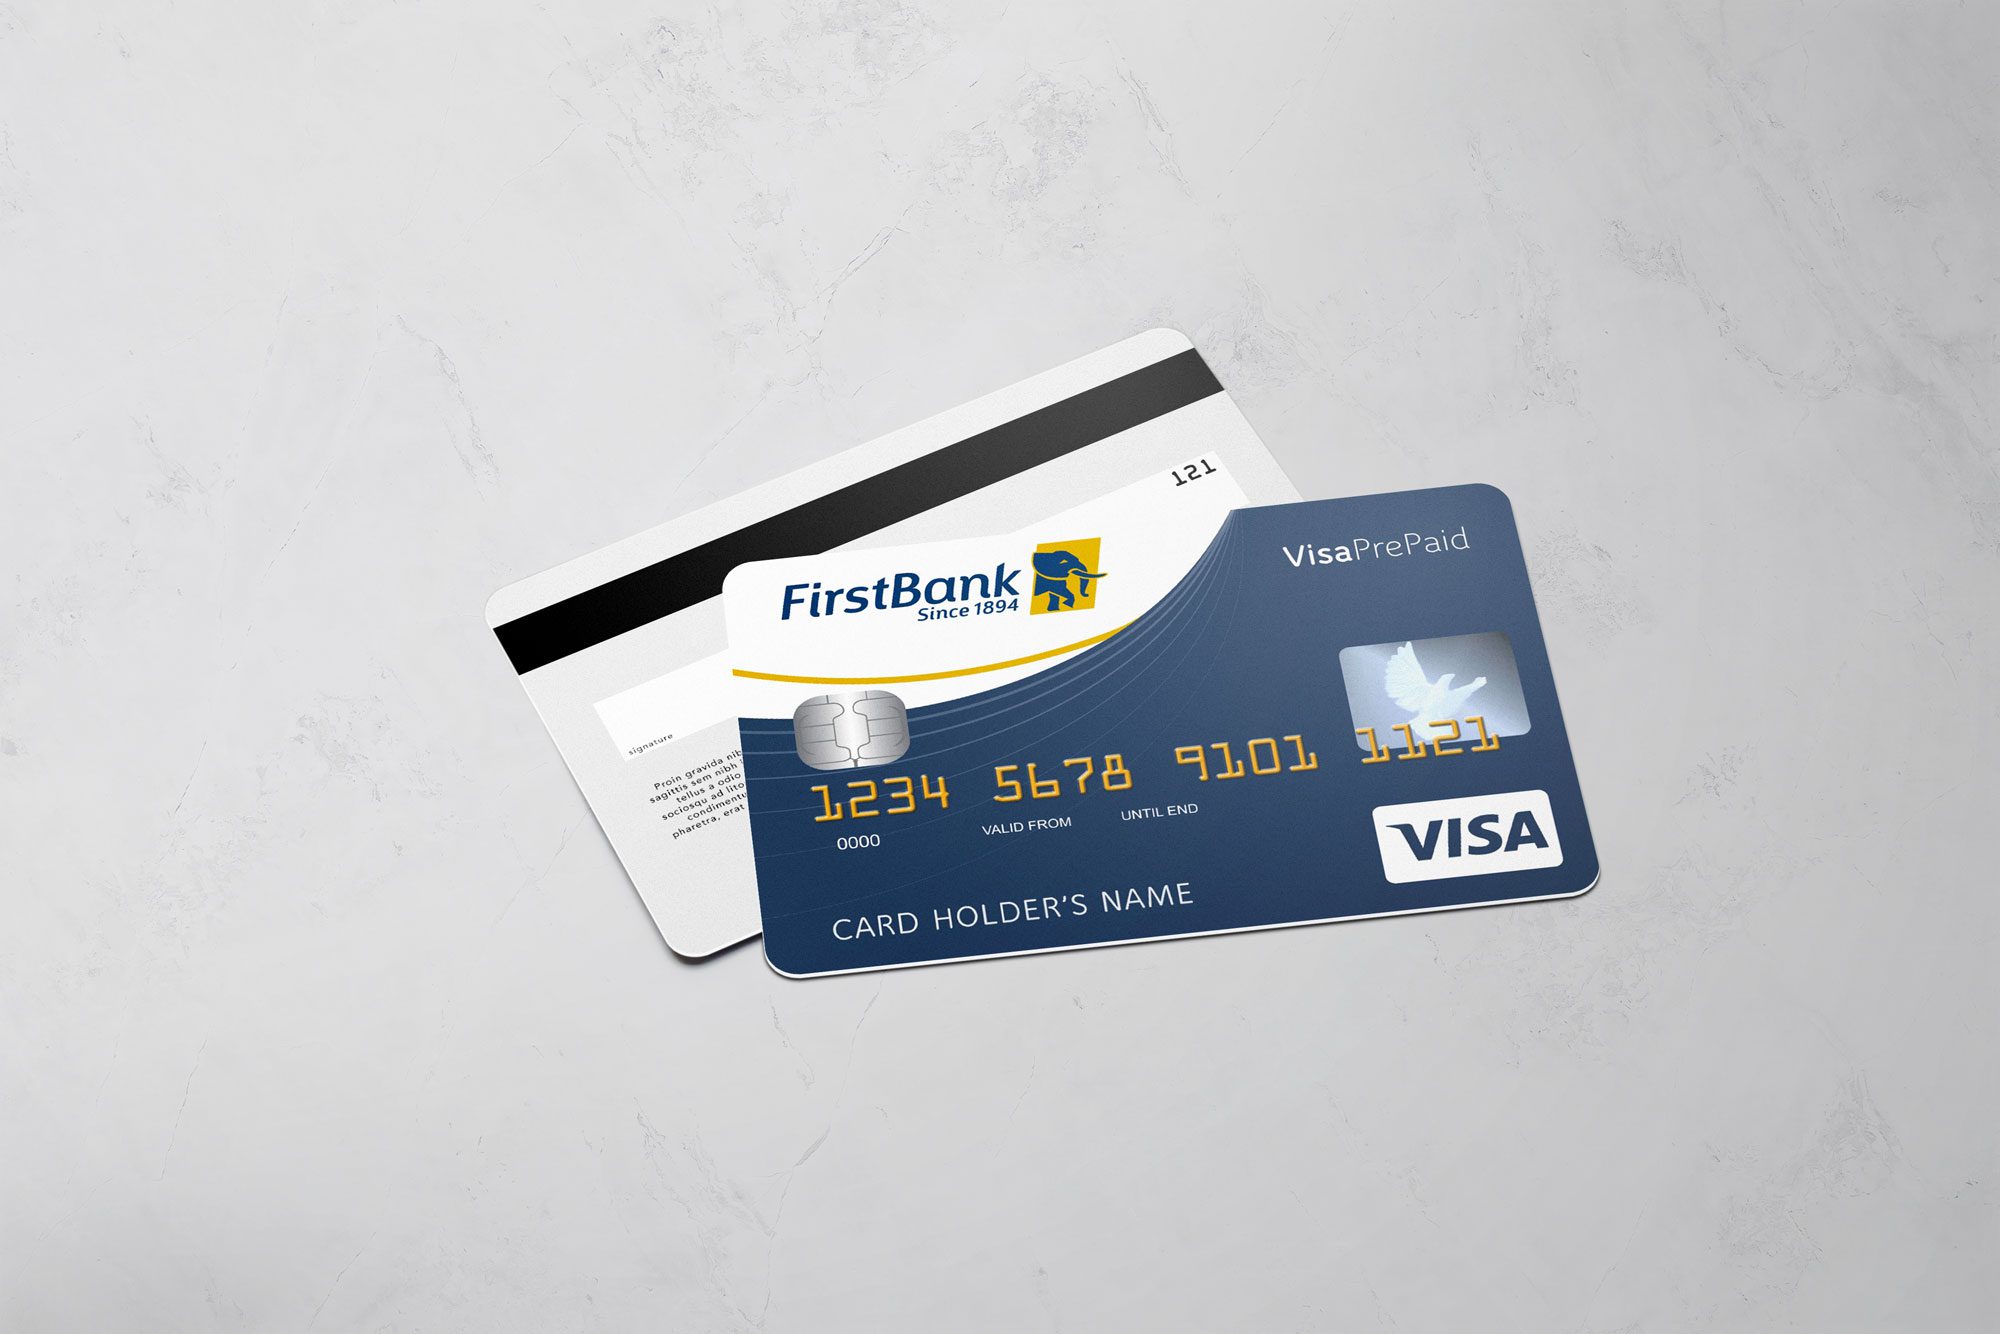 Visa Prepaid Card FirstBank Nigeria